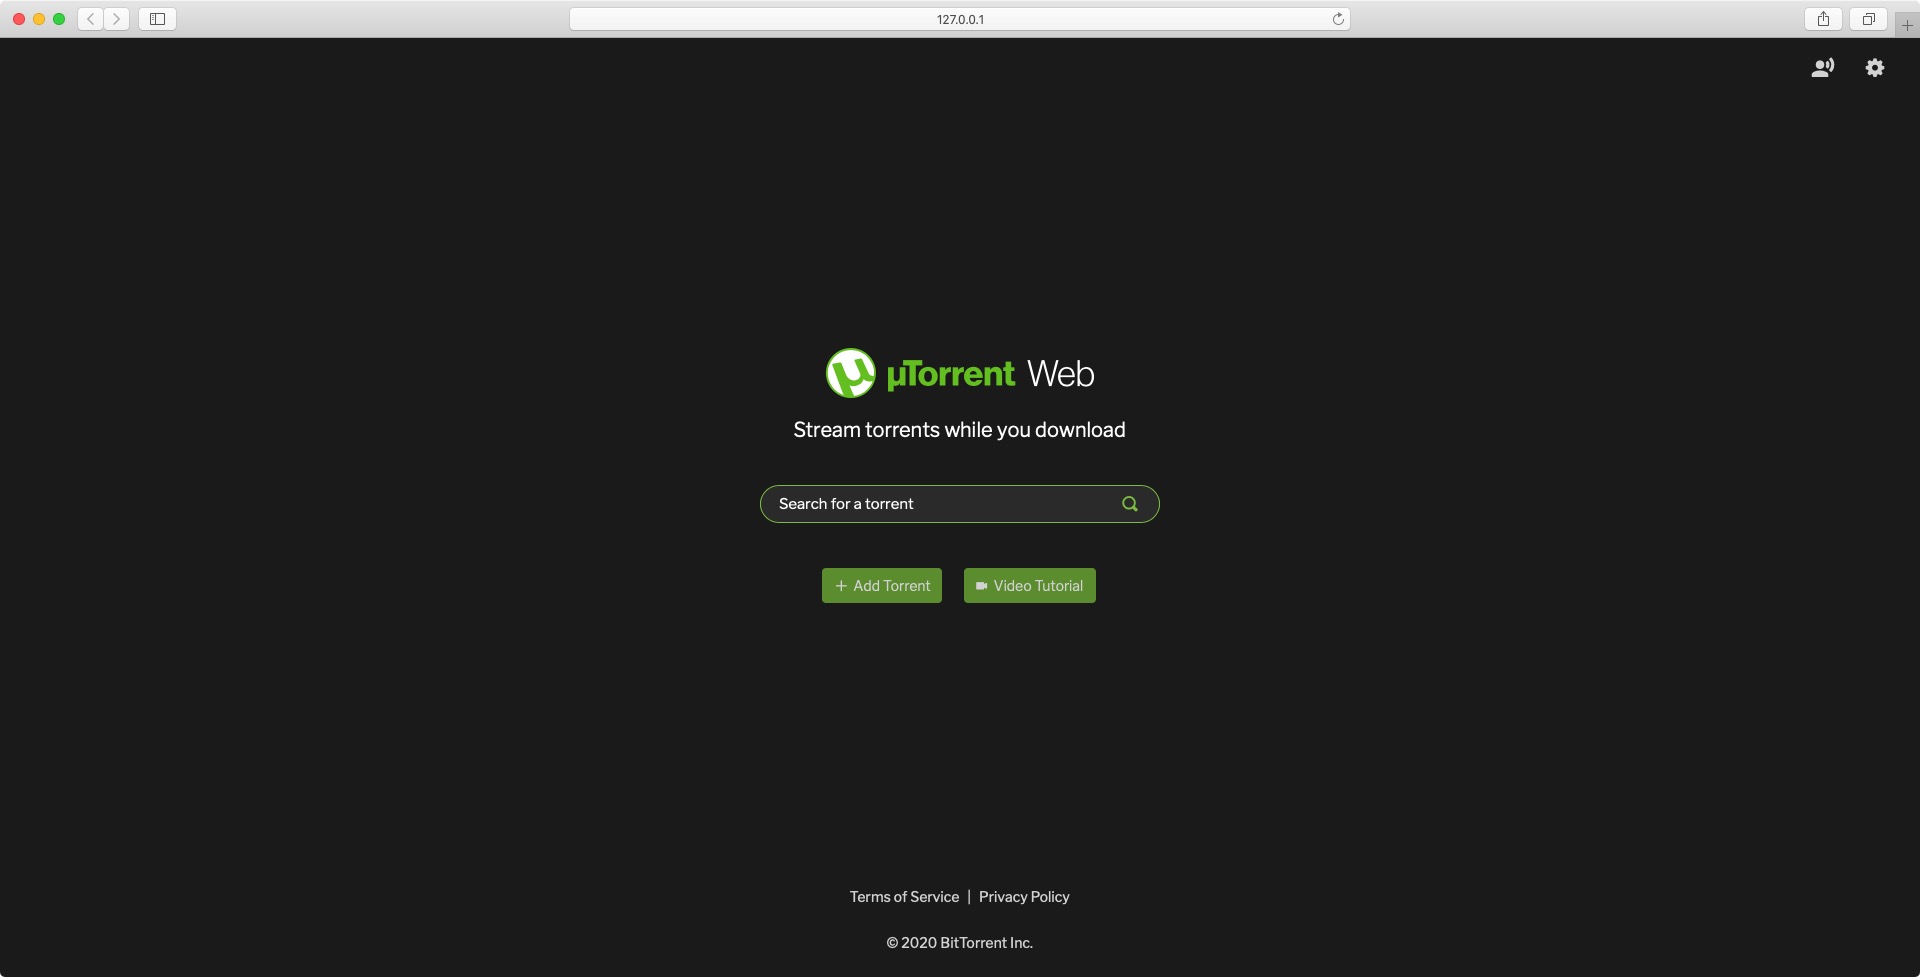 uTorrent Web 1.0 : Welcome Screen 